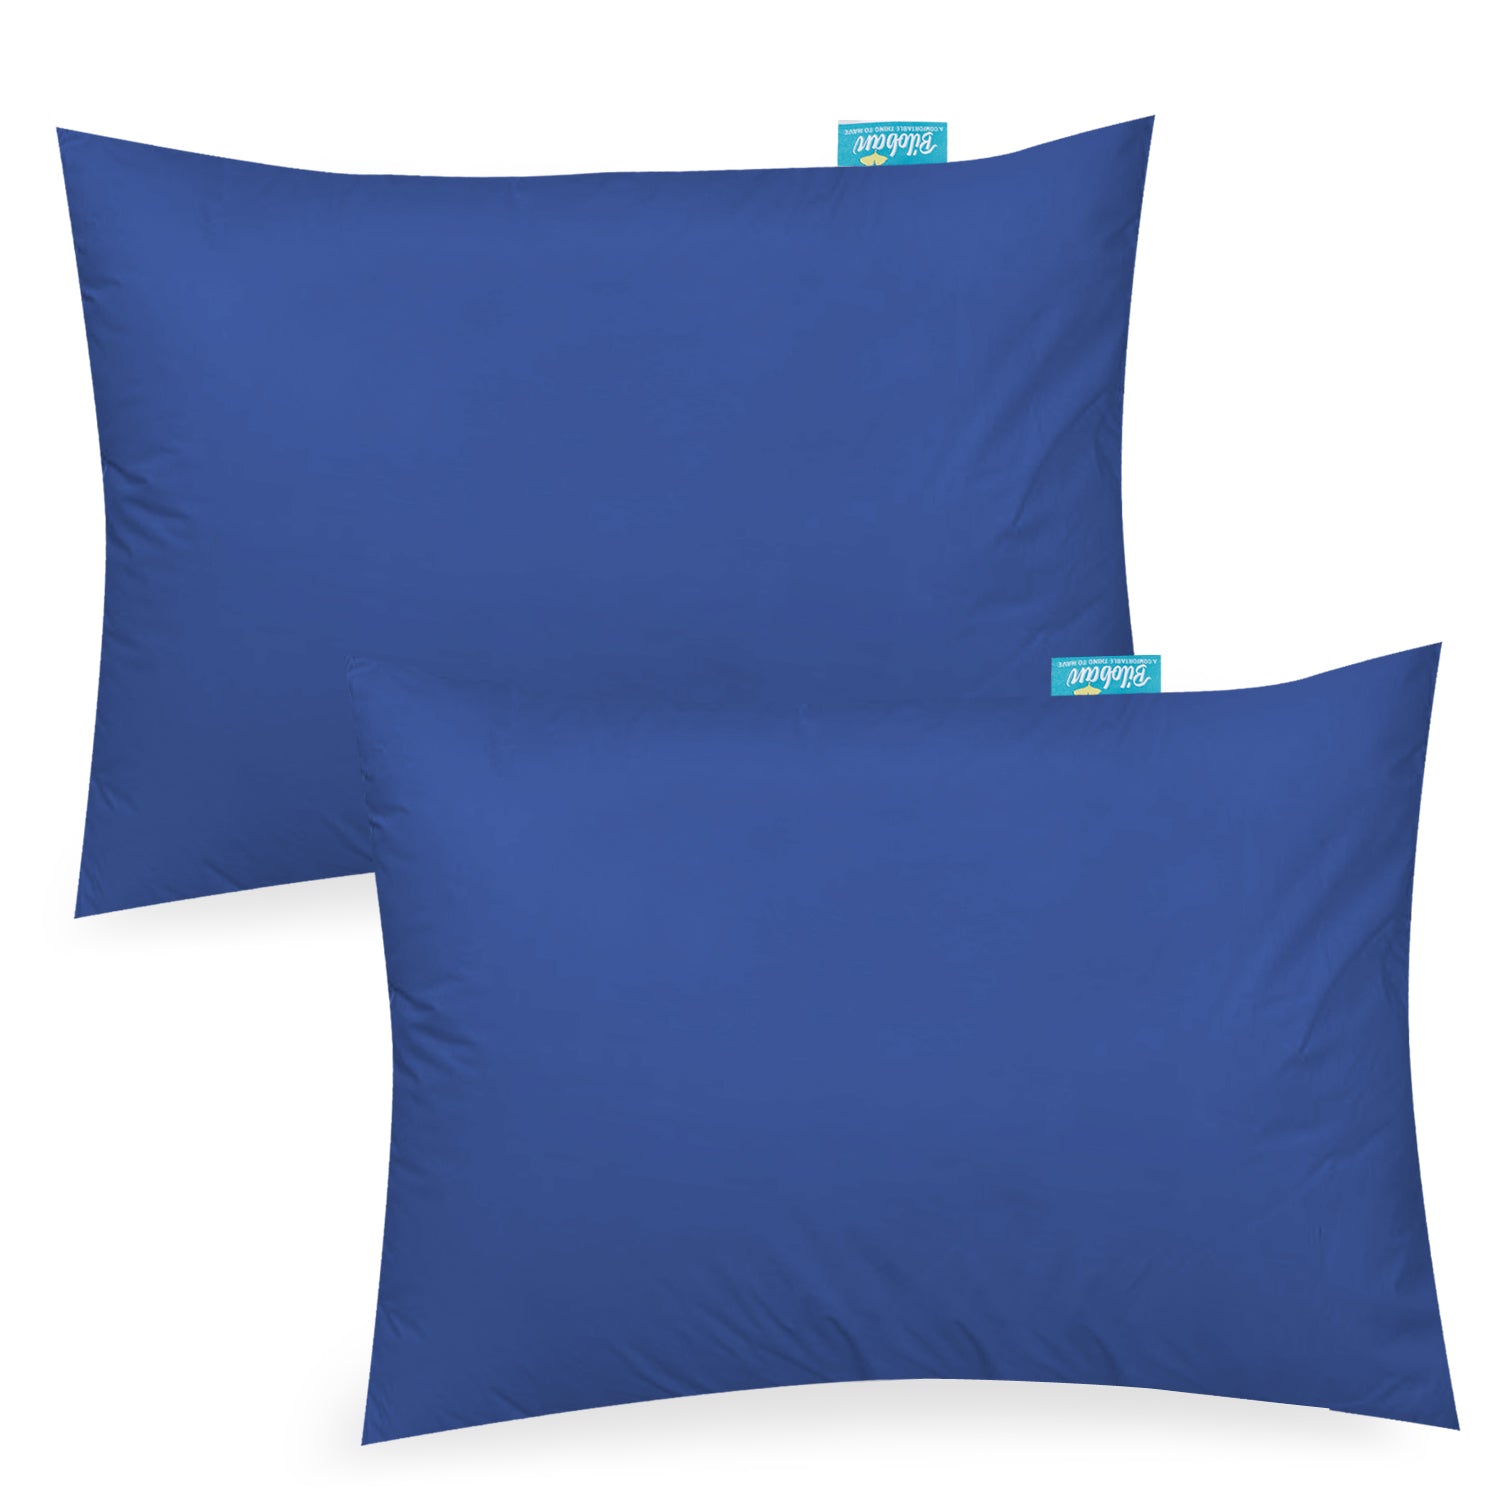 Toddler Pillowcase- 2 Pack, 100% Cotton, 12" x 16", 13" x 18", 14" x 19", Navy Blue - Biloban Online Store